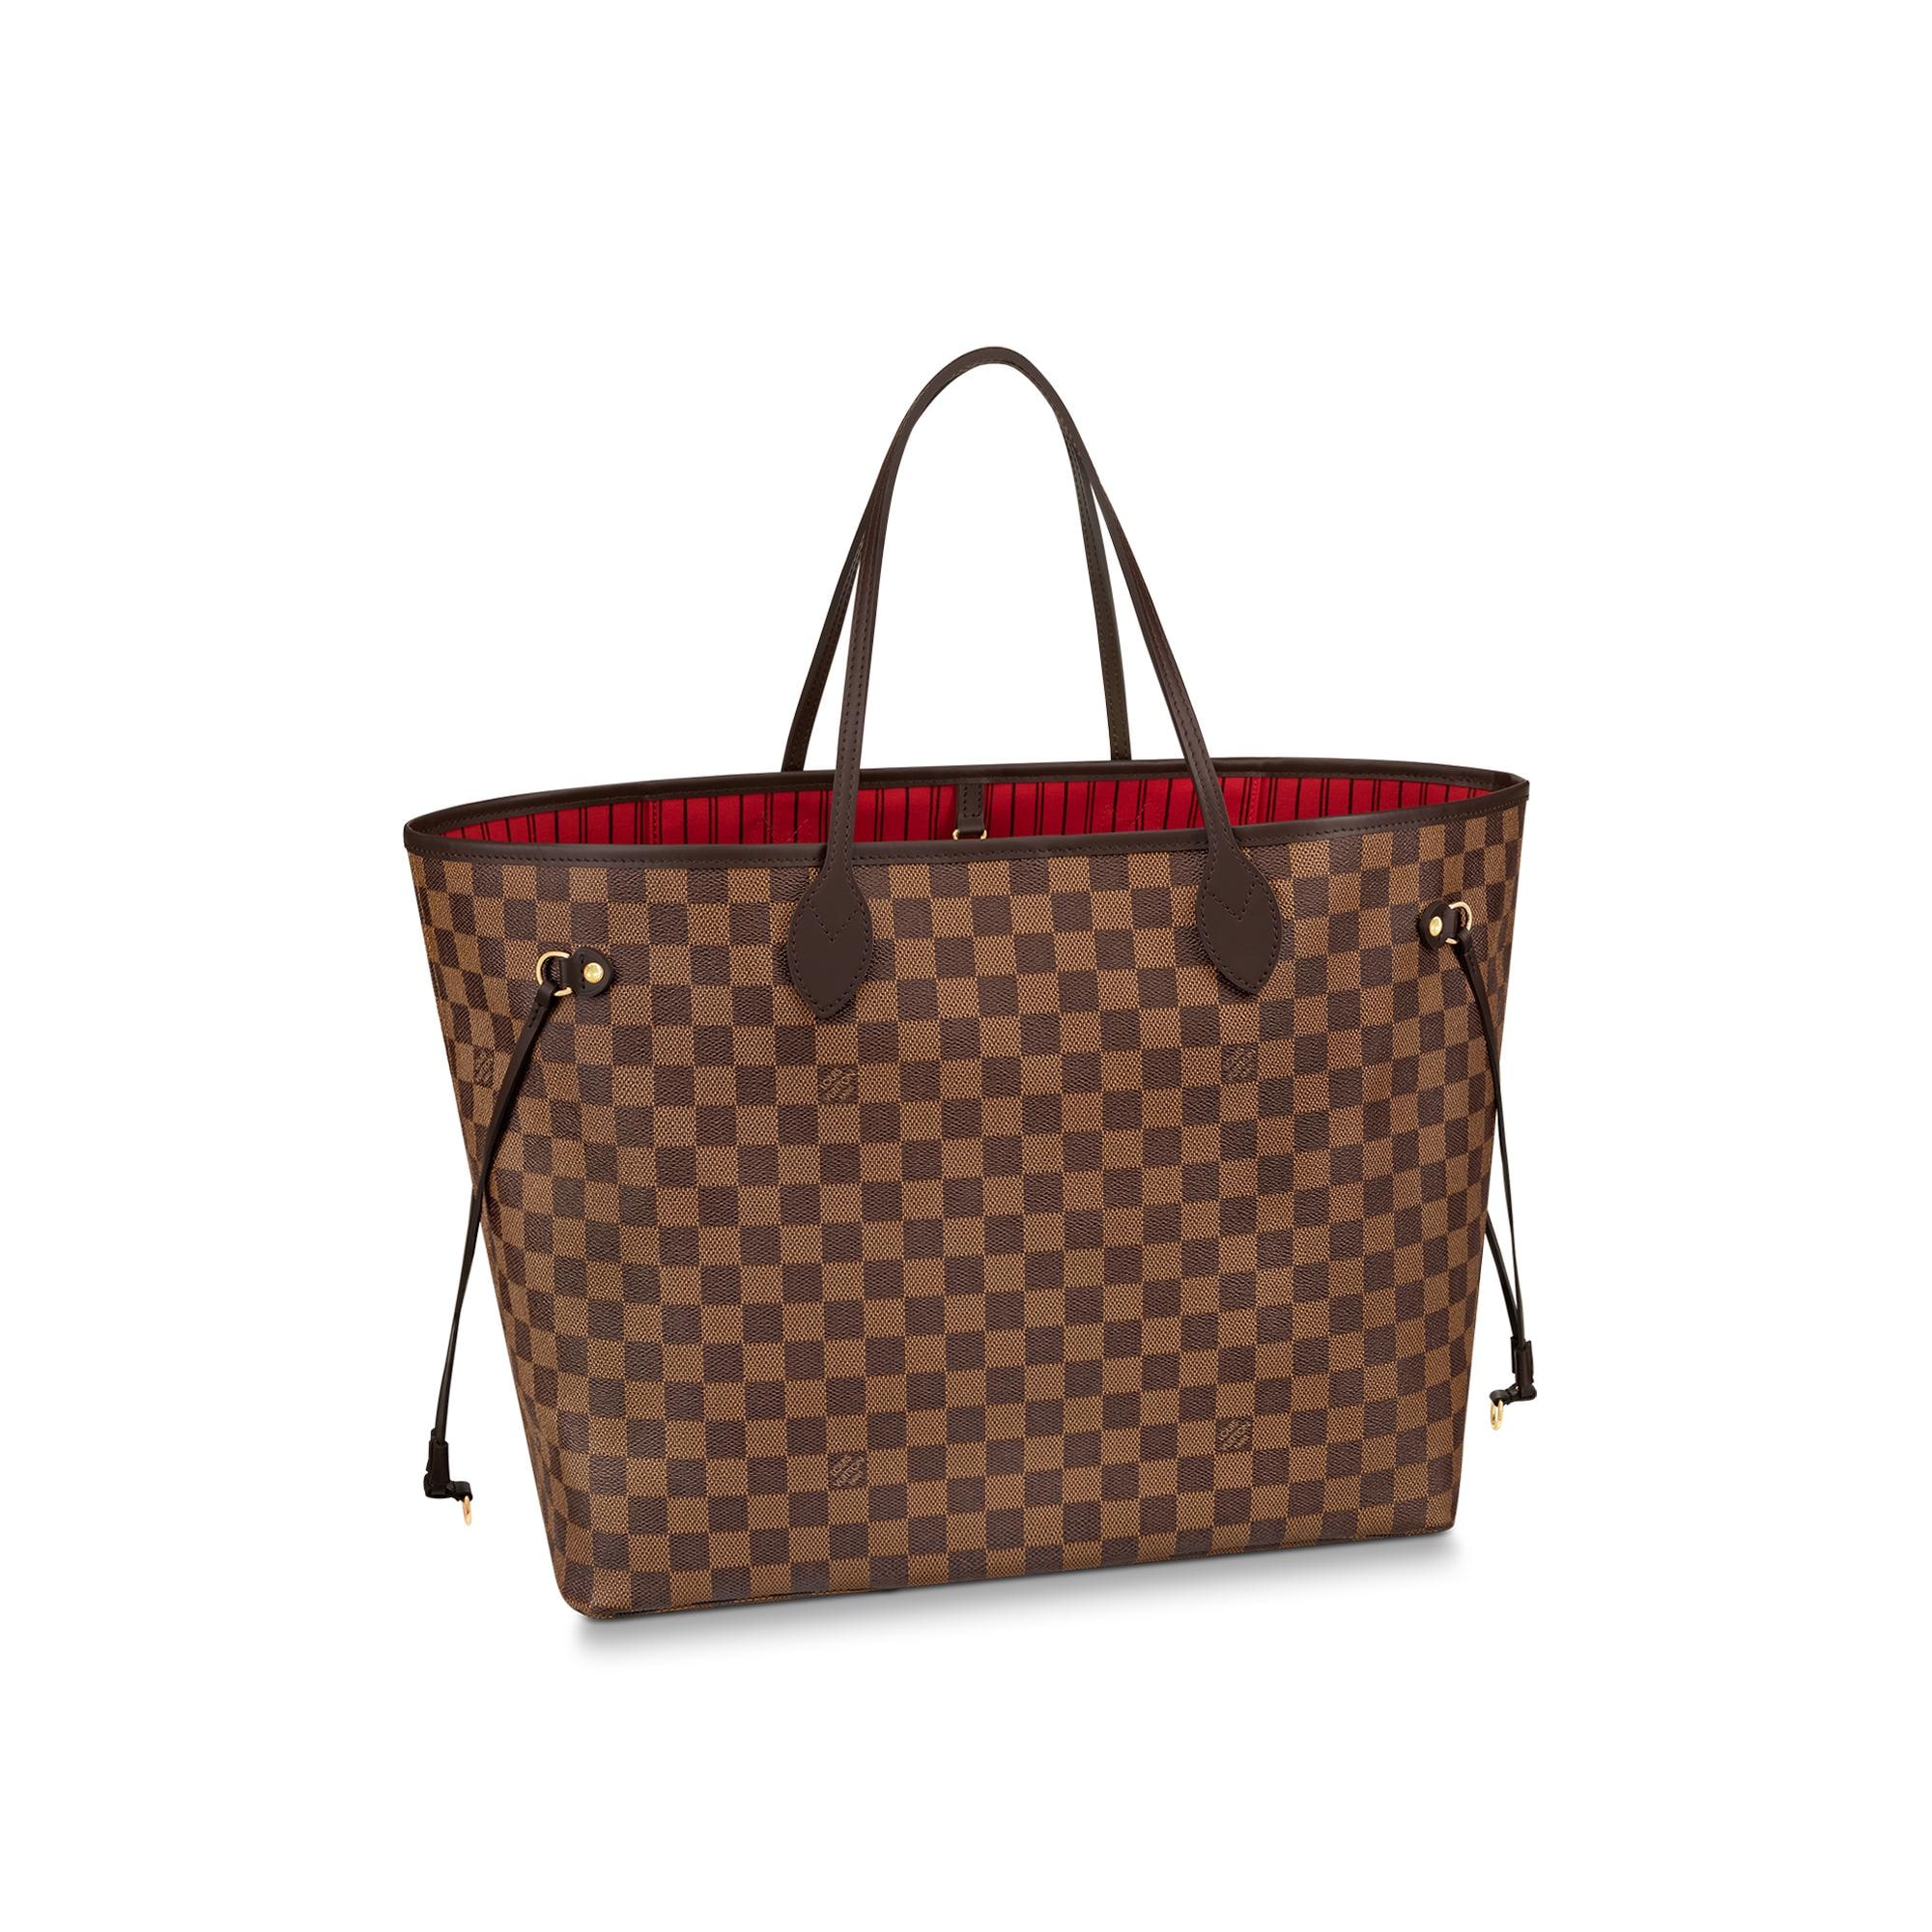 Ce sac Louis Vuitton est l'un des classiques mode dans lequel investir